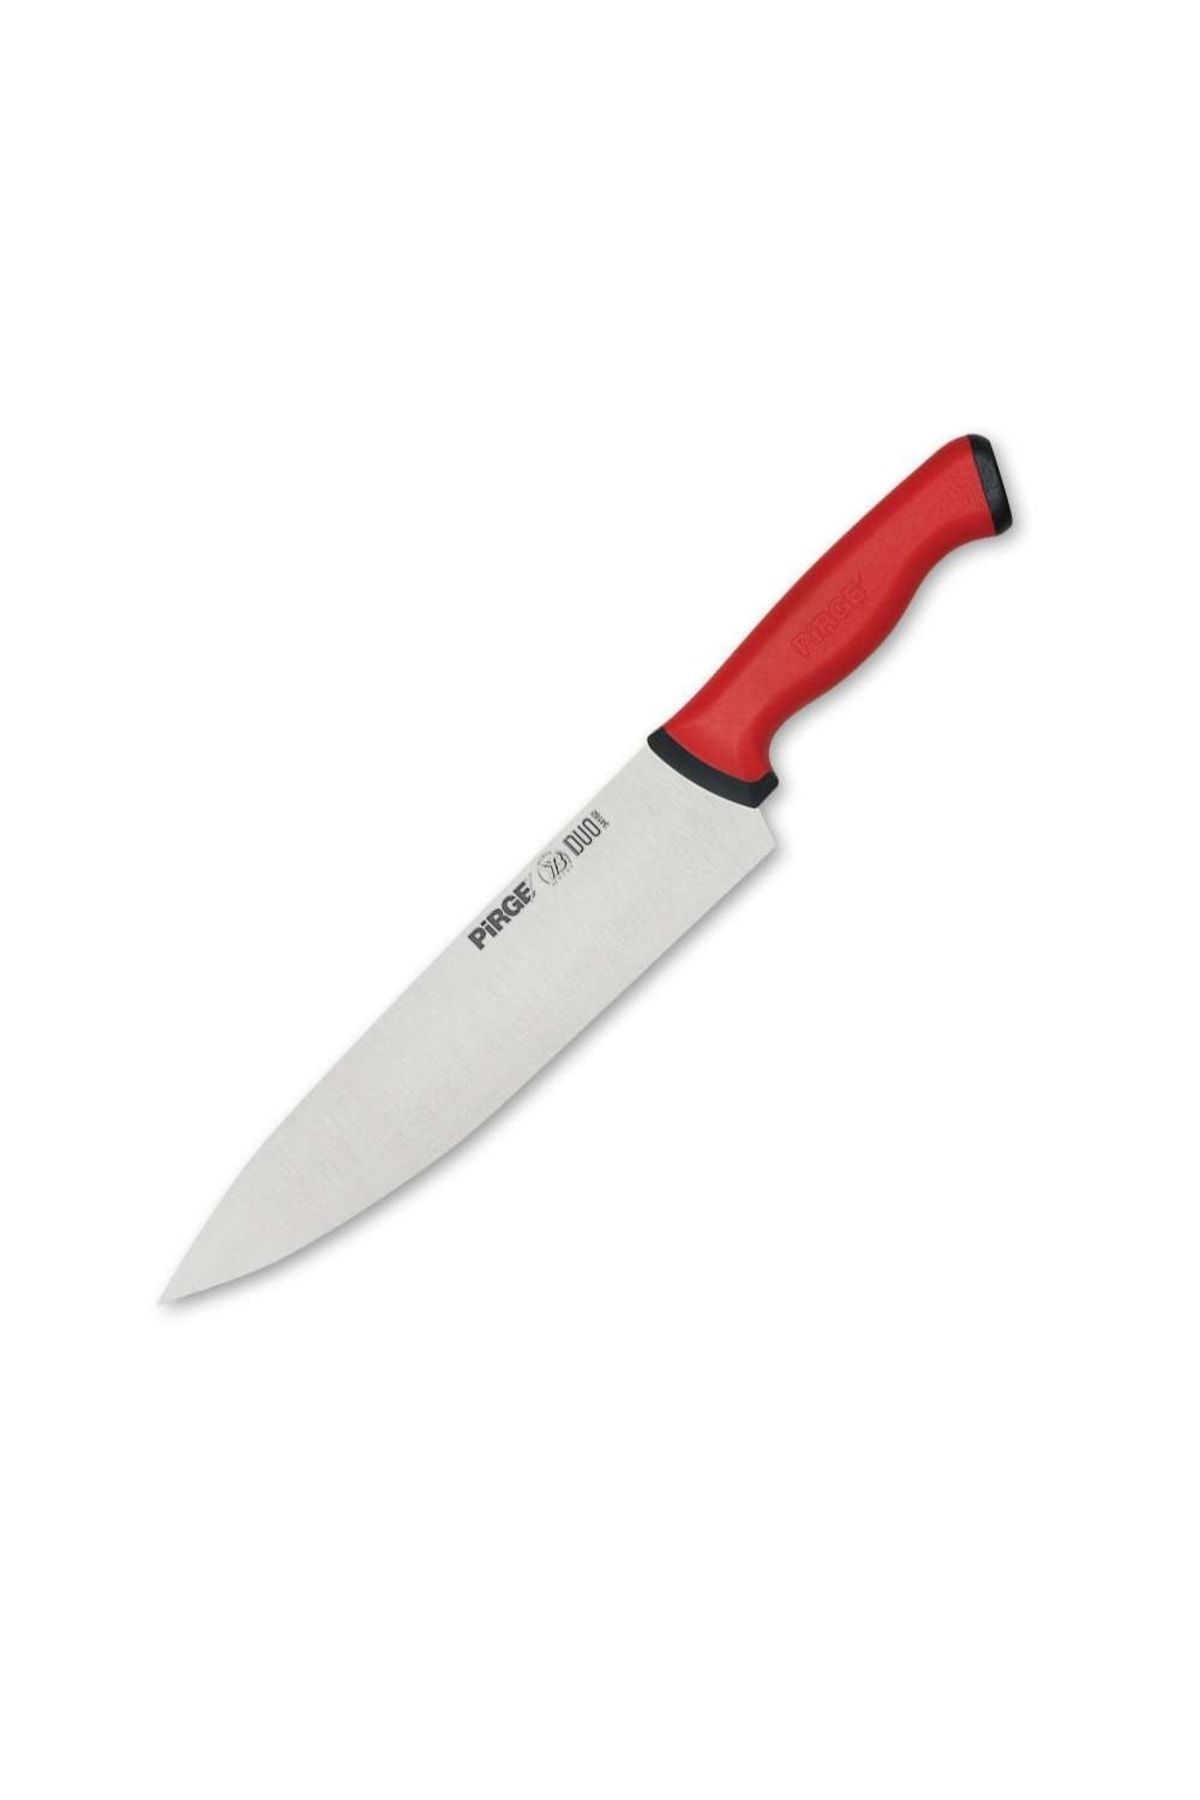 Pirge Kırmızı Saplı Duo Şef Bıçağı 23 cm 34162